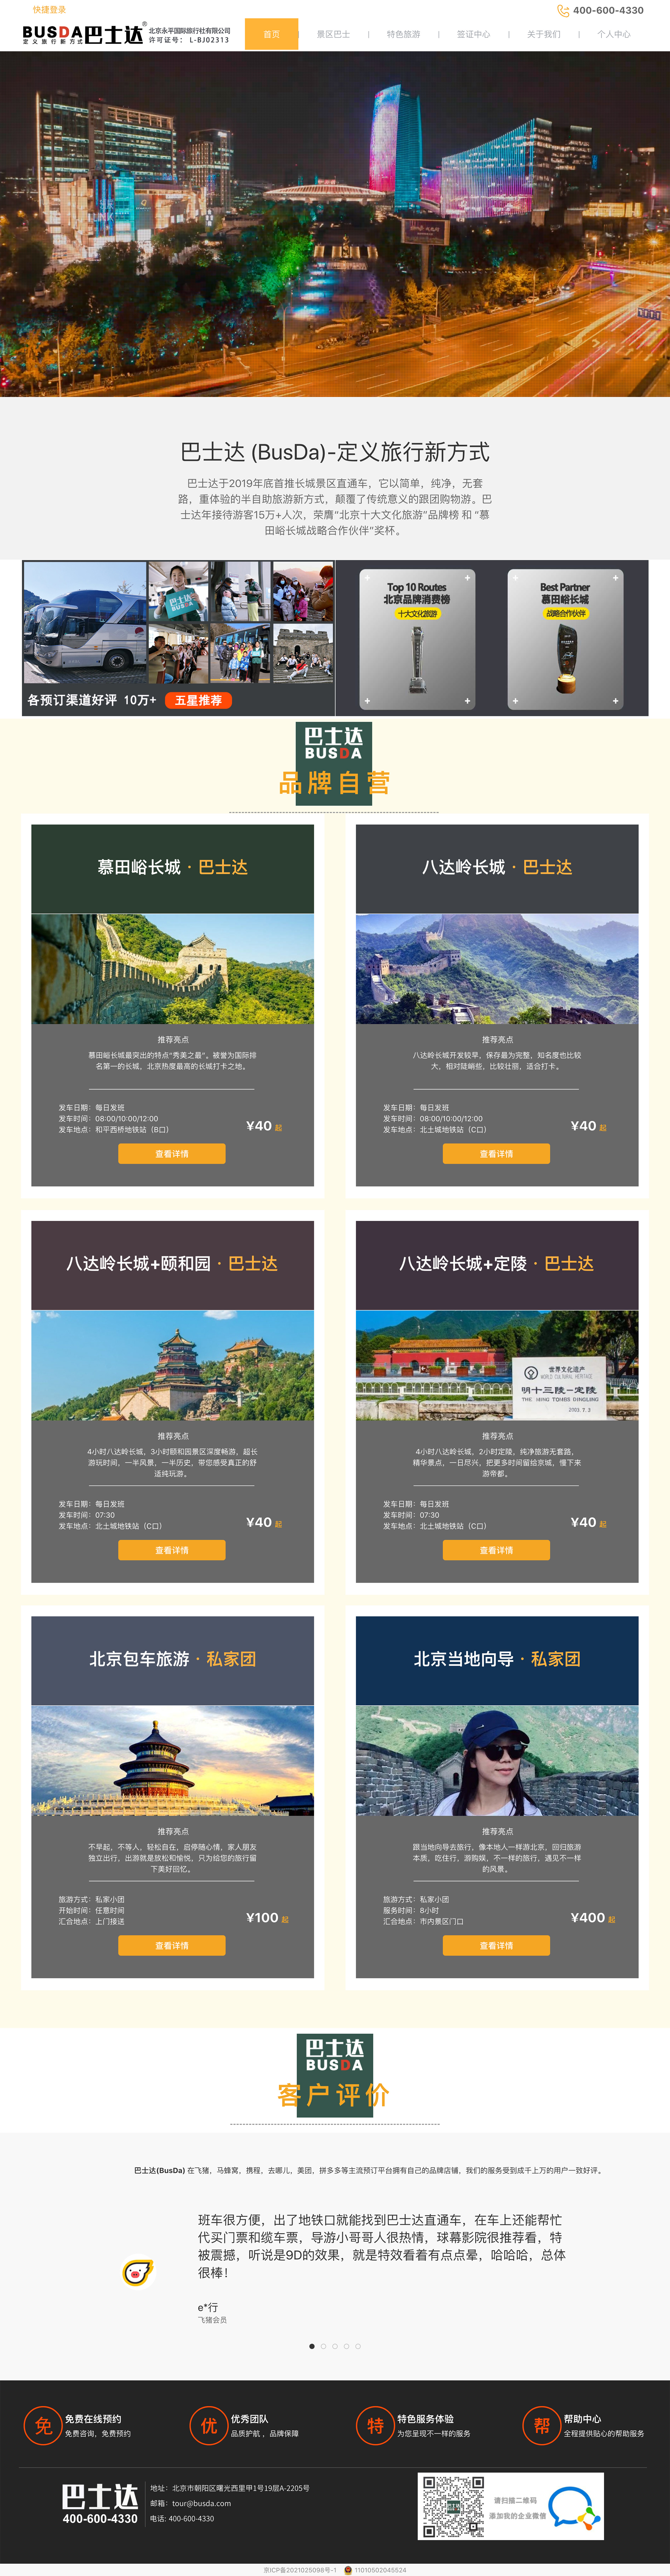 北京永平国际旅行社有限公司